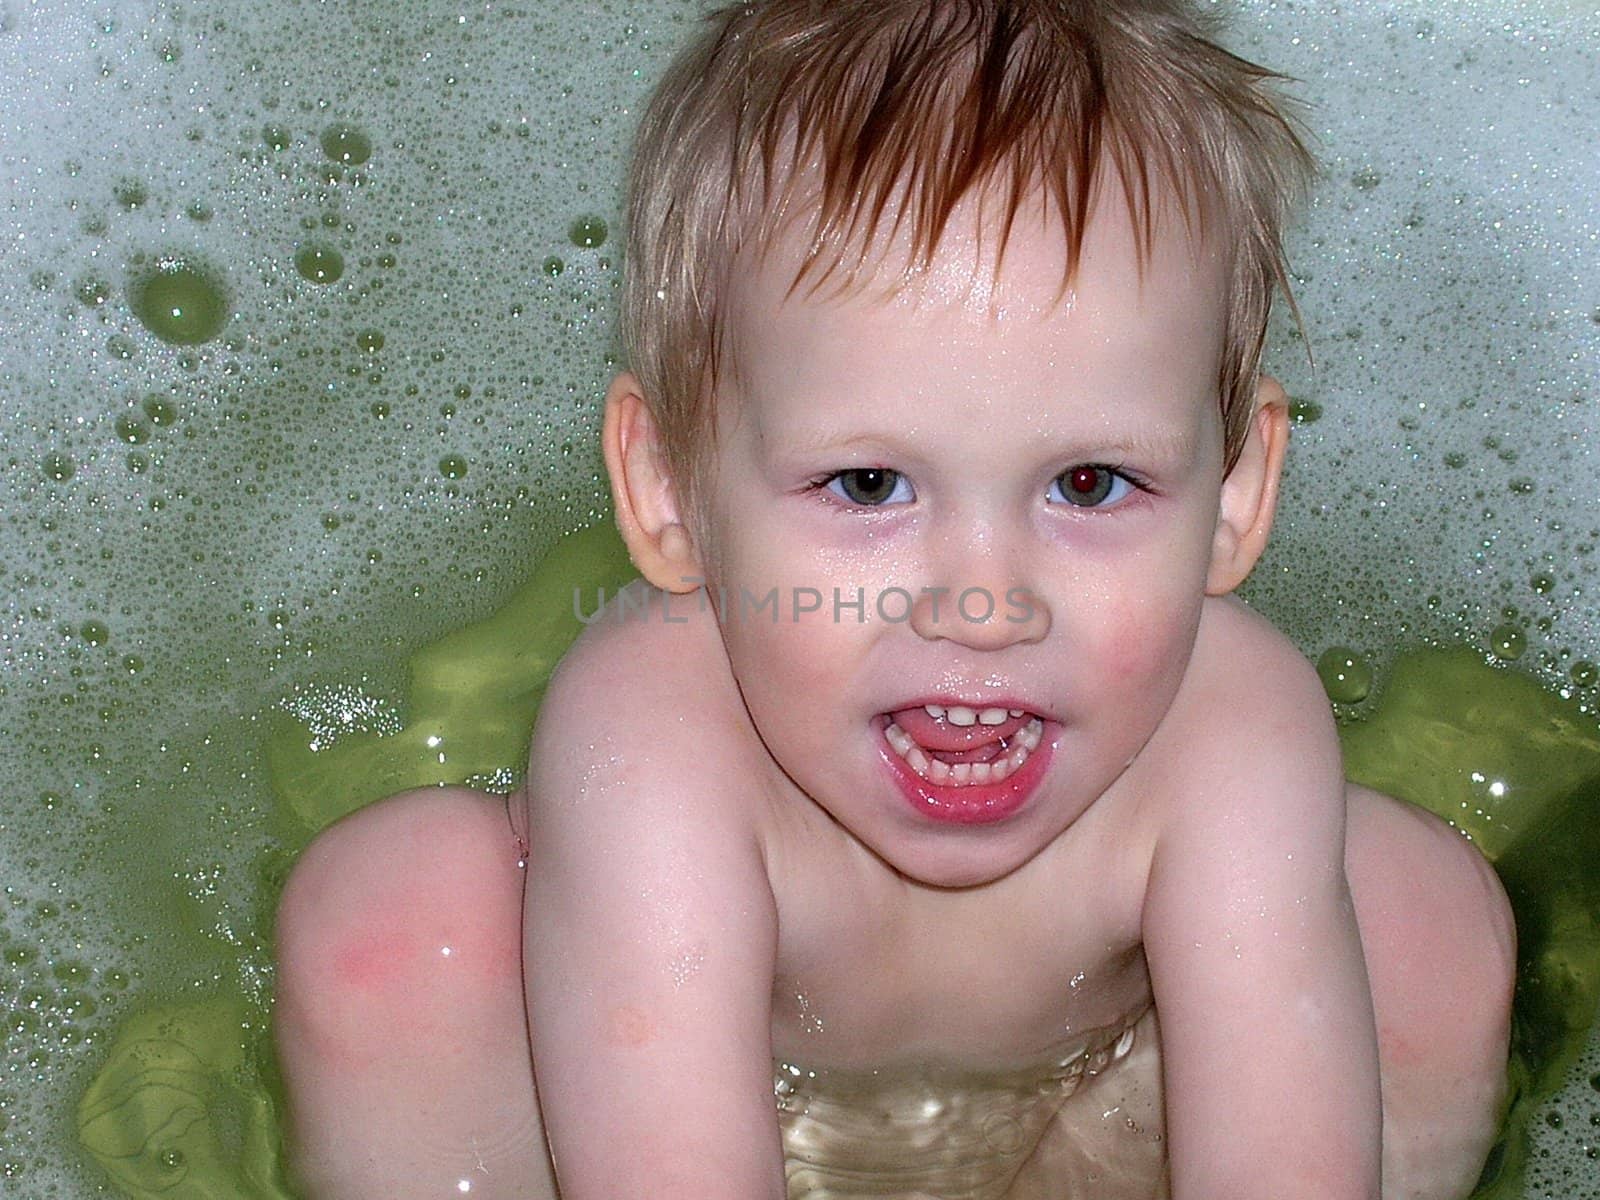 The boy bathes in a foamy bath          